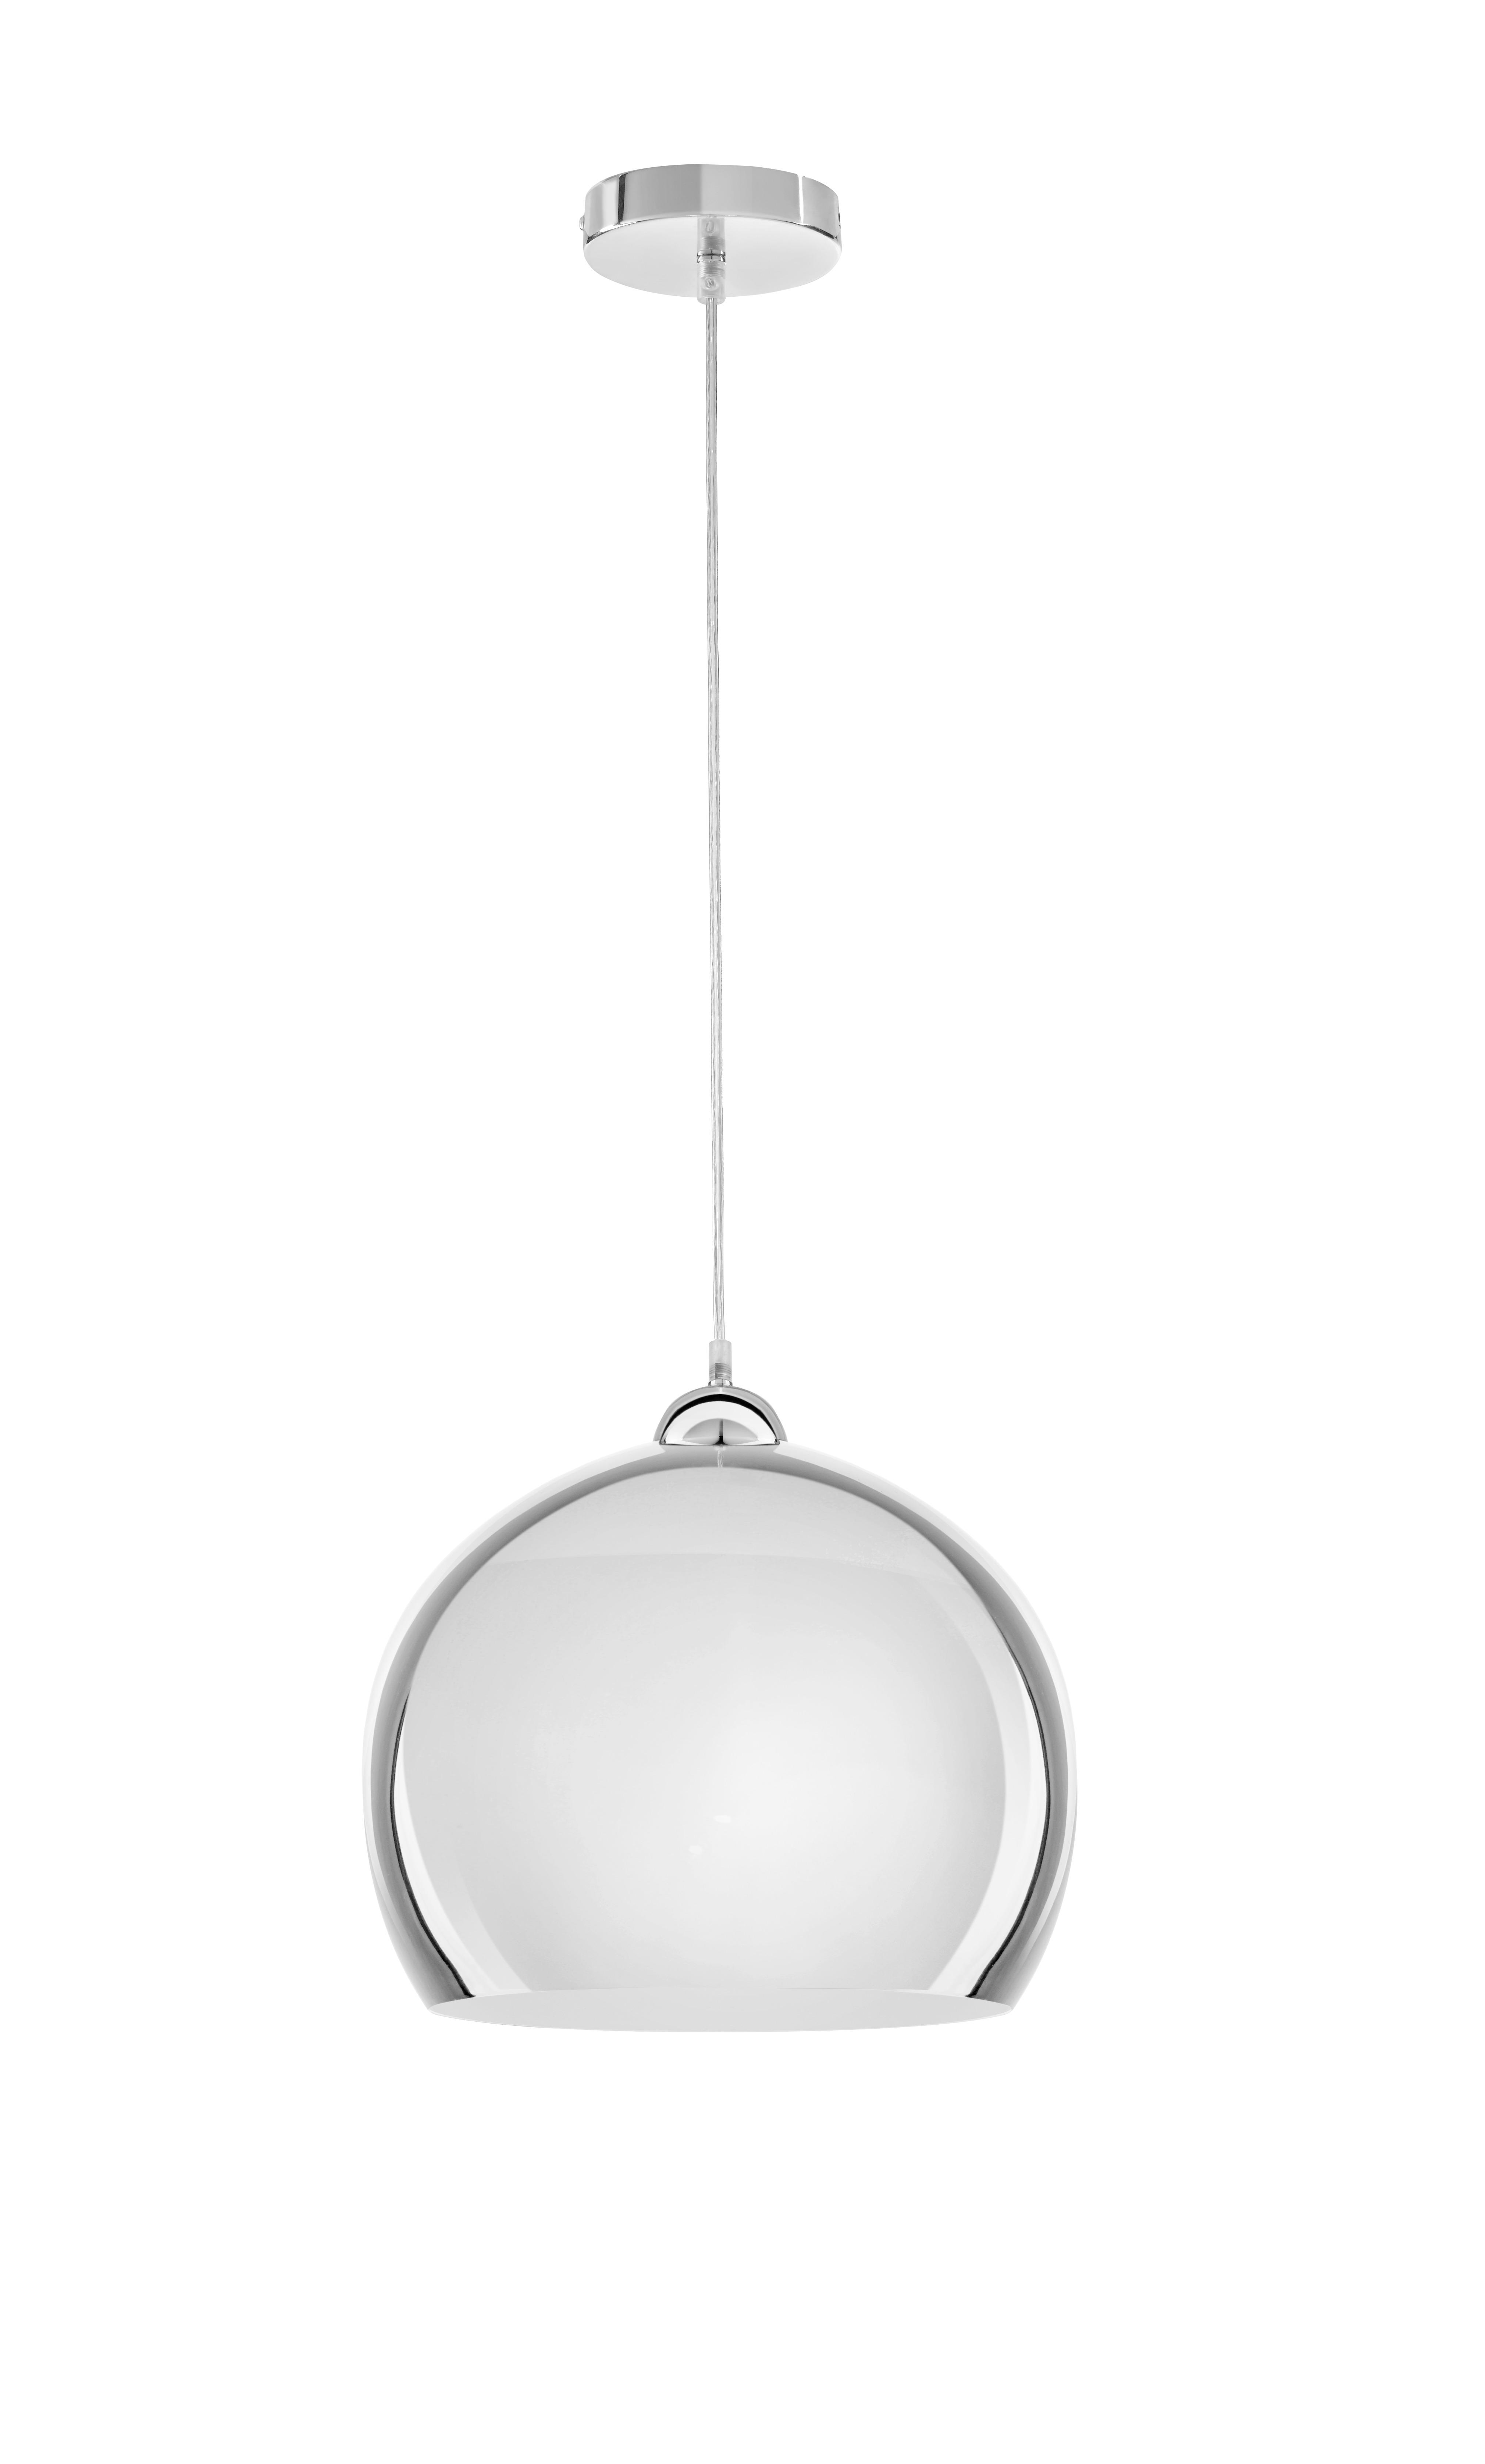 Hängeleuchte Konrad max. 60 Watt - Chromfarben, Modern, Glas/Kunststoff (30/120cm) - Modern Living